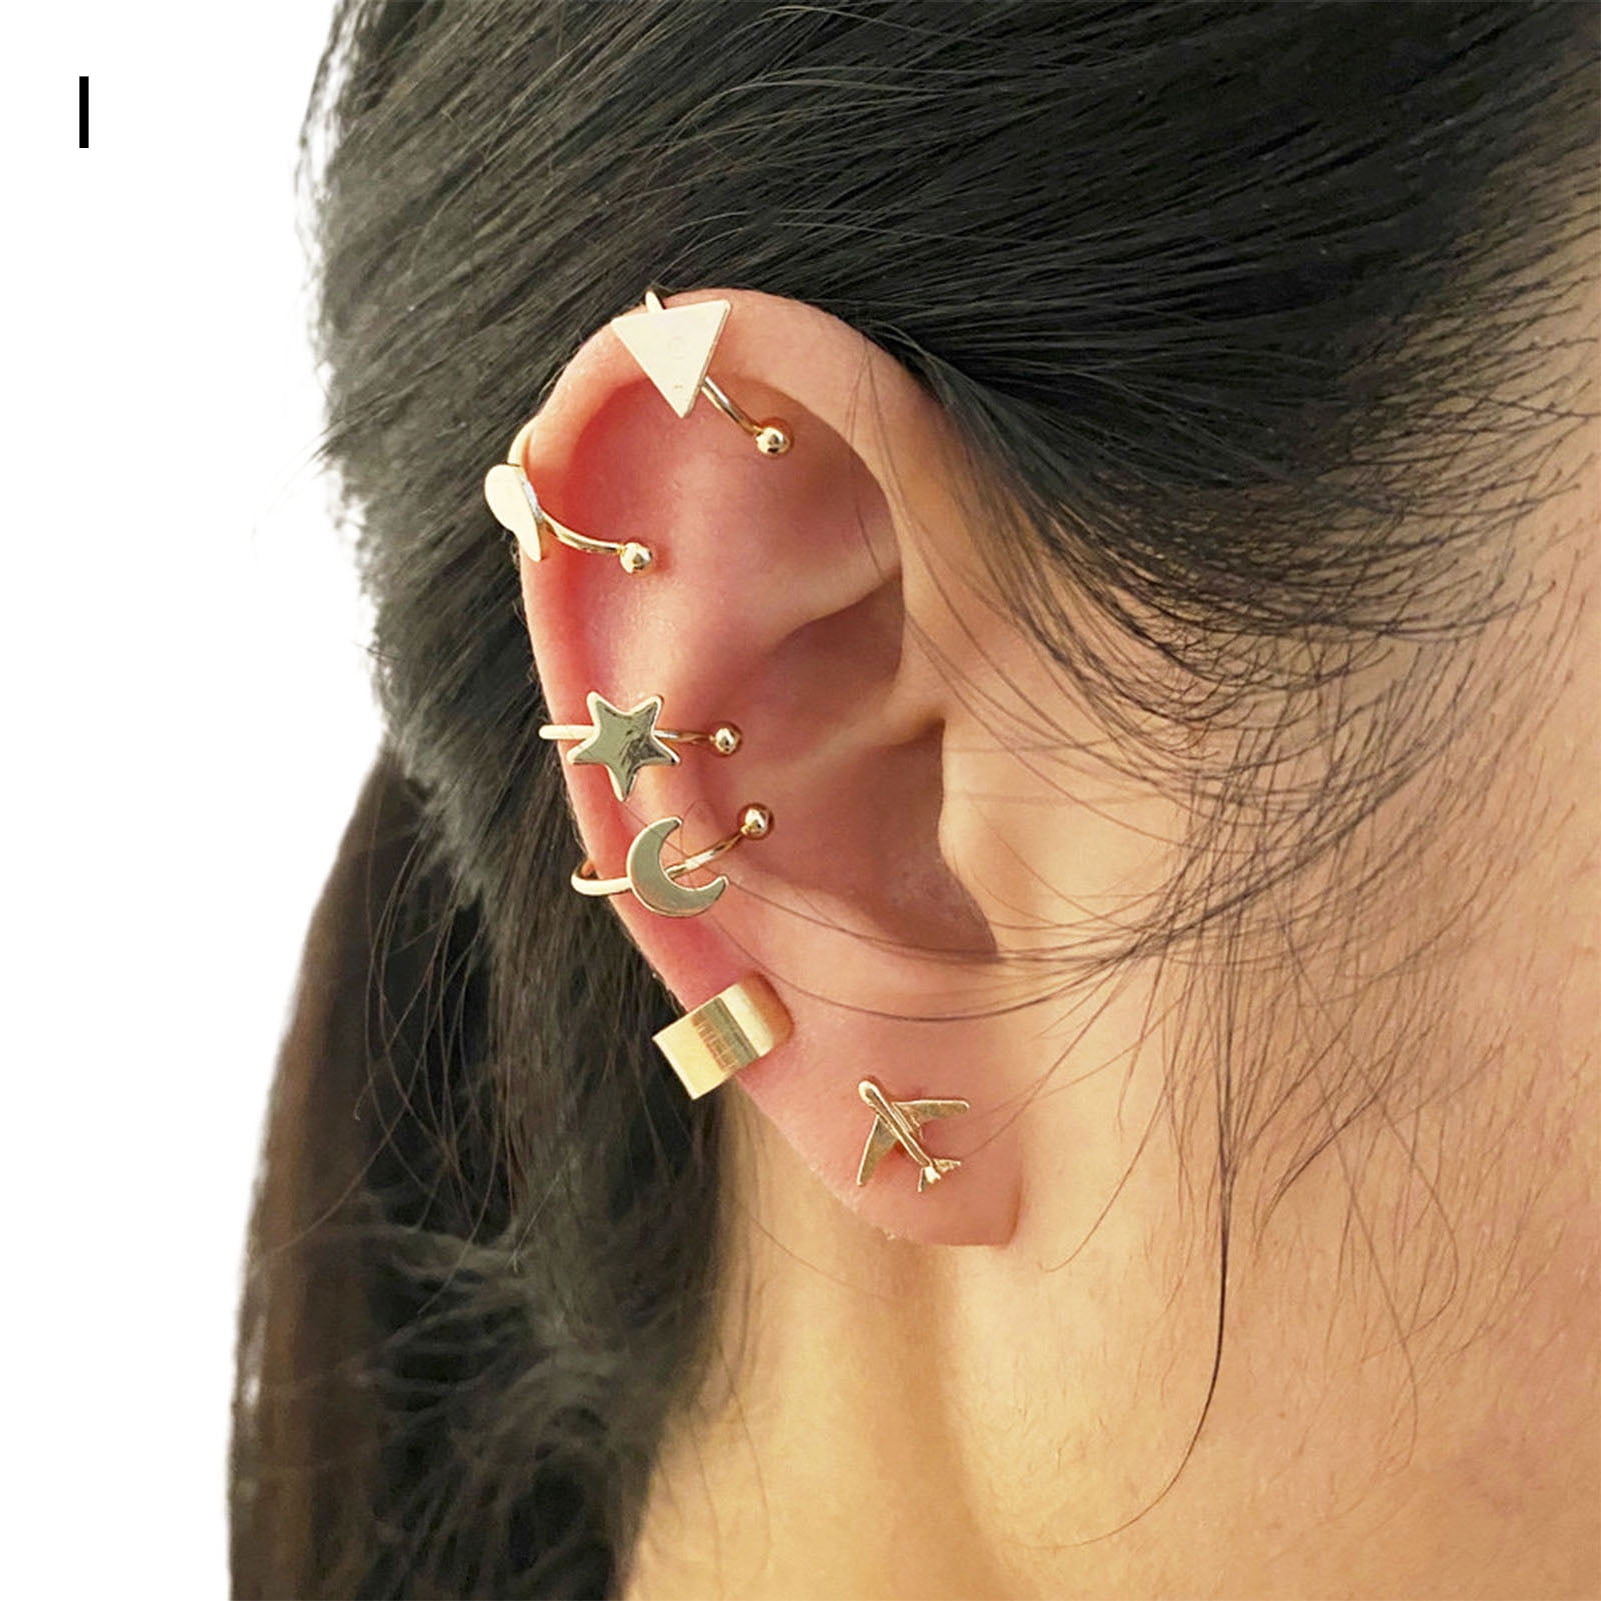 Longita Ear Cuff Earrings for Women Non Piercing Ear Hoop Earrings  Stainless Steel Clip On Cartilage Earring Huggie Dainty Minimal Crossed  Conch Piercing Sparkling Jewelry Silver Rose Gold price in UAE |